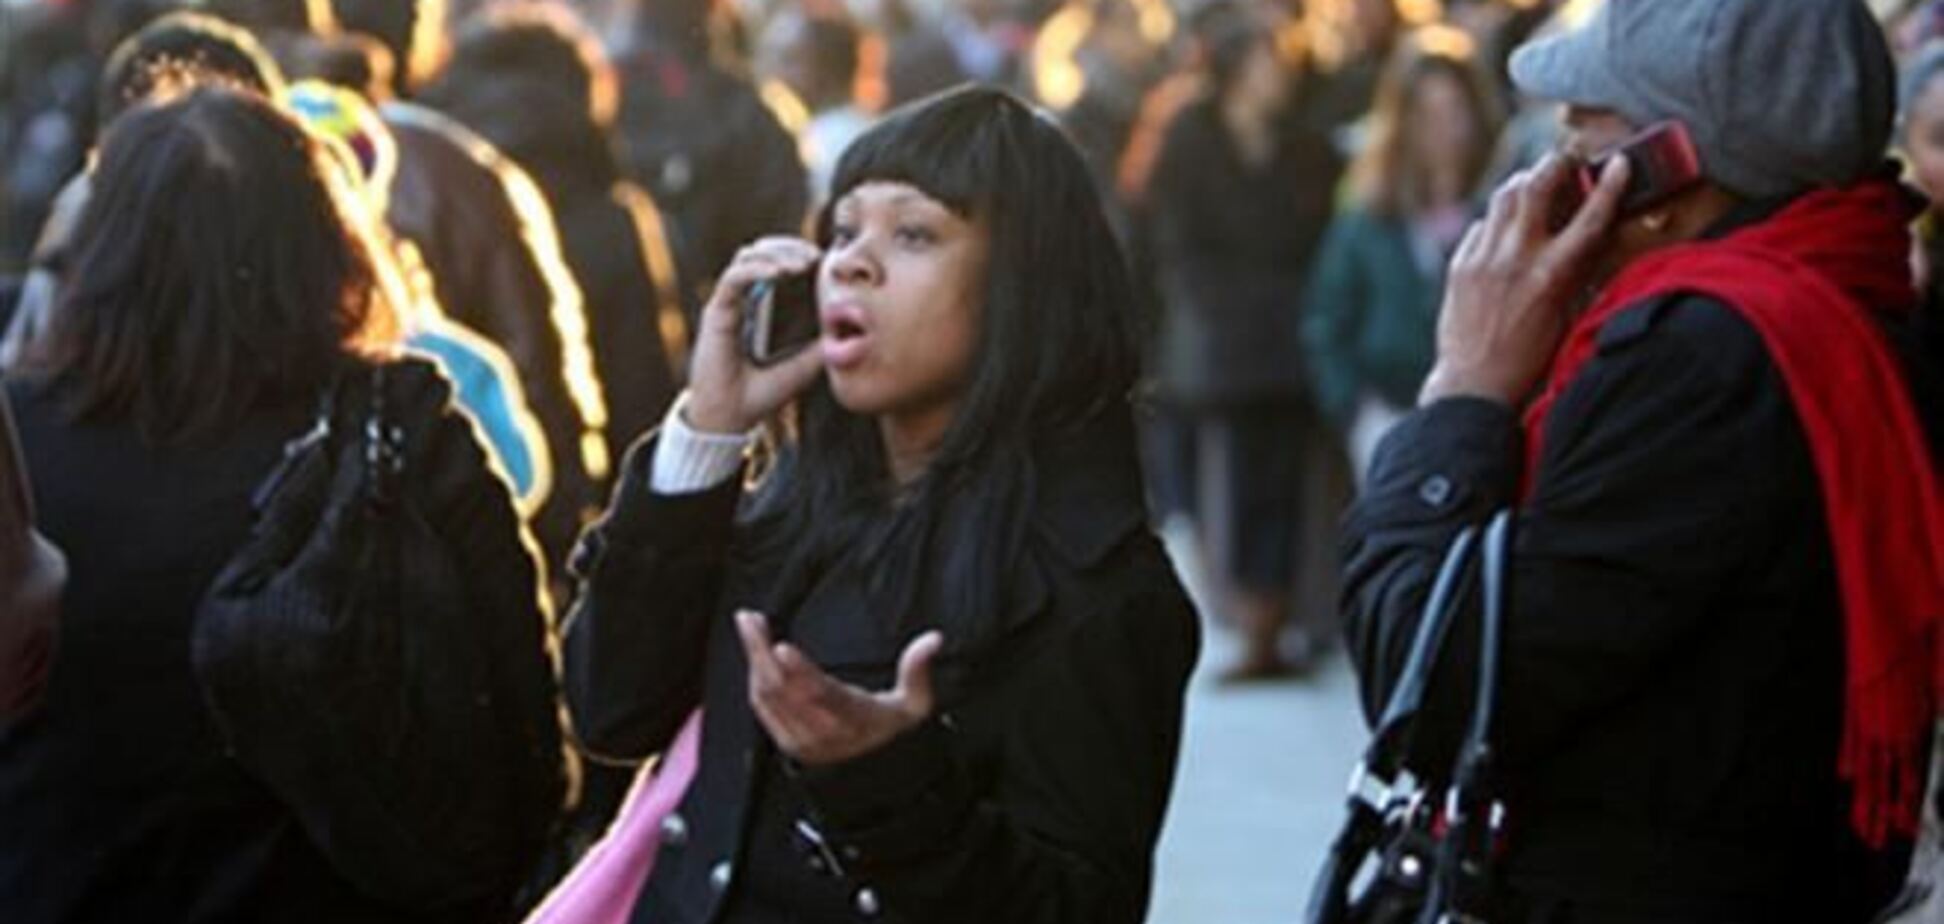 В Конгрессе США представлен законопроект, запрещающий массовое прослушивание телефонных разговоров